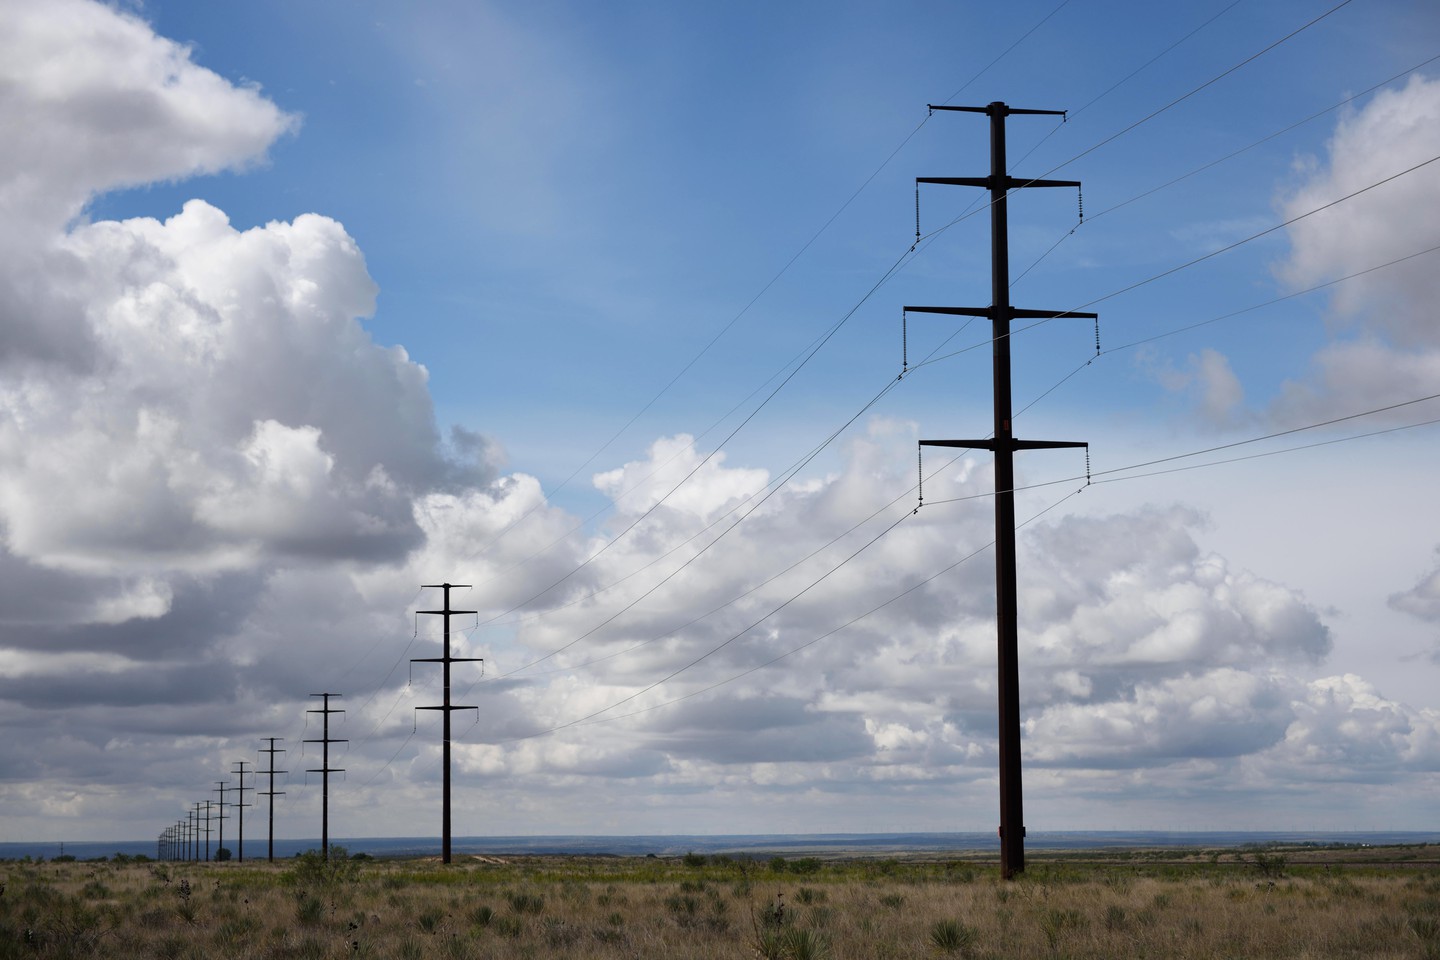 Cuối cùng, trước Thế chiến II, lưới điện hiện đại của Mỹ bắt đầu thành hình